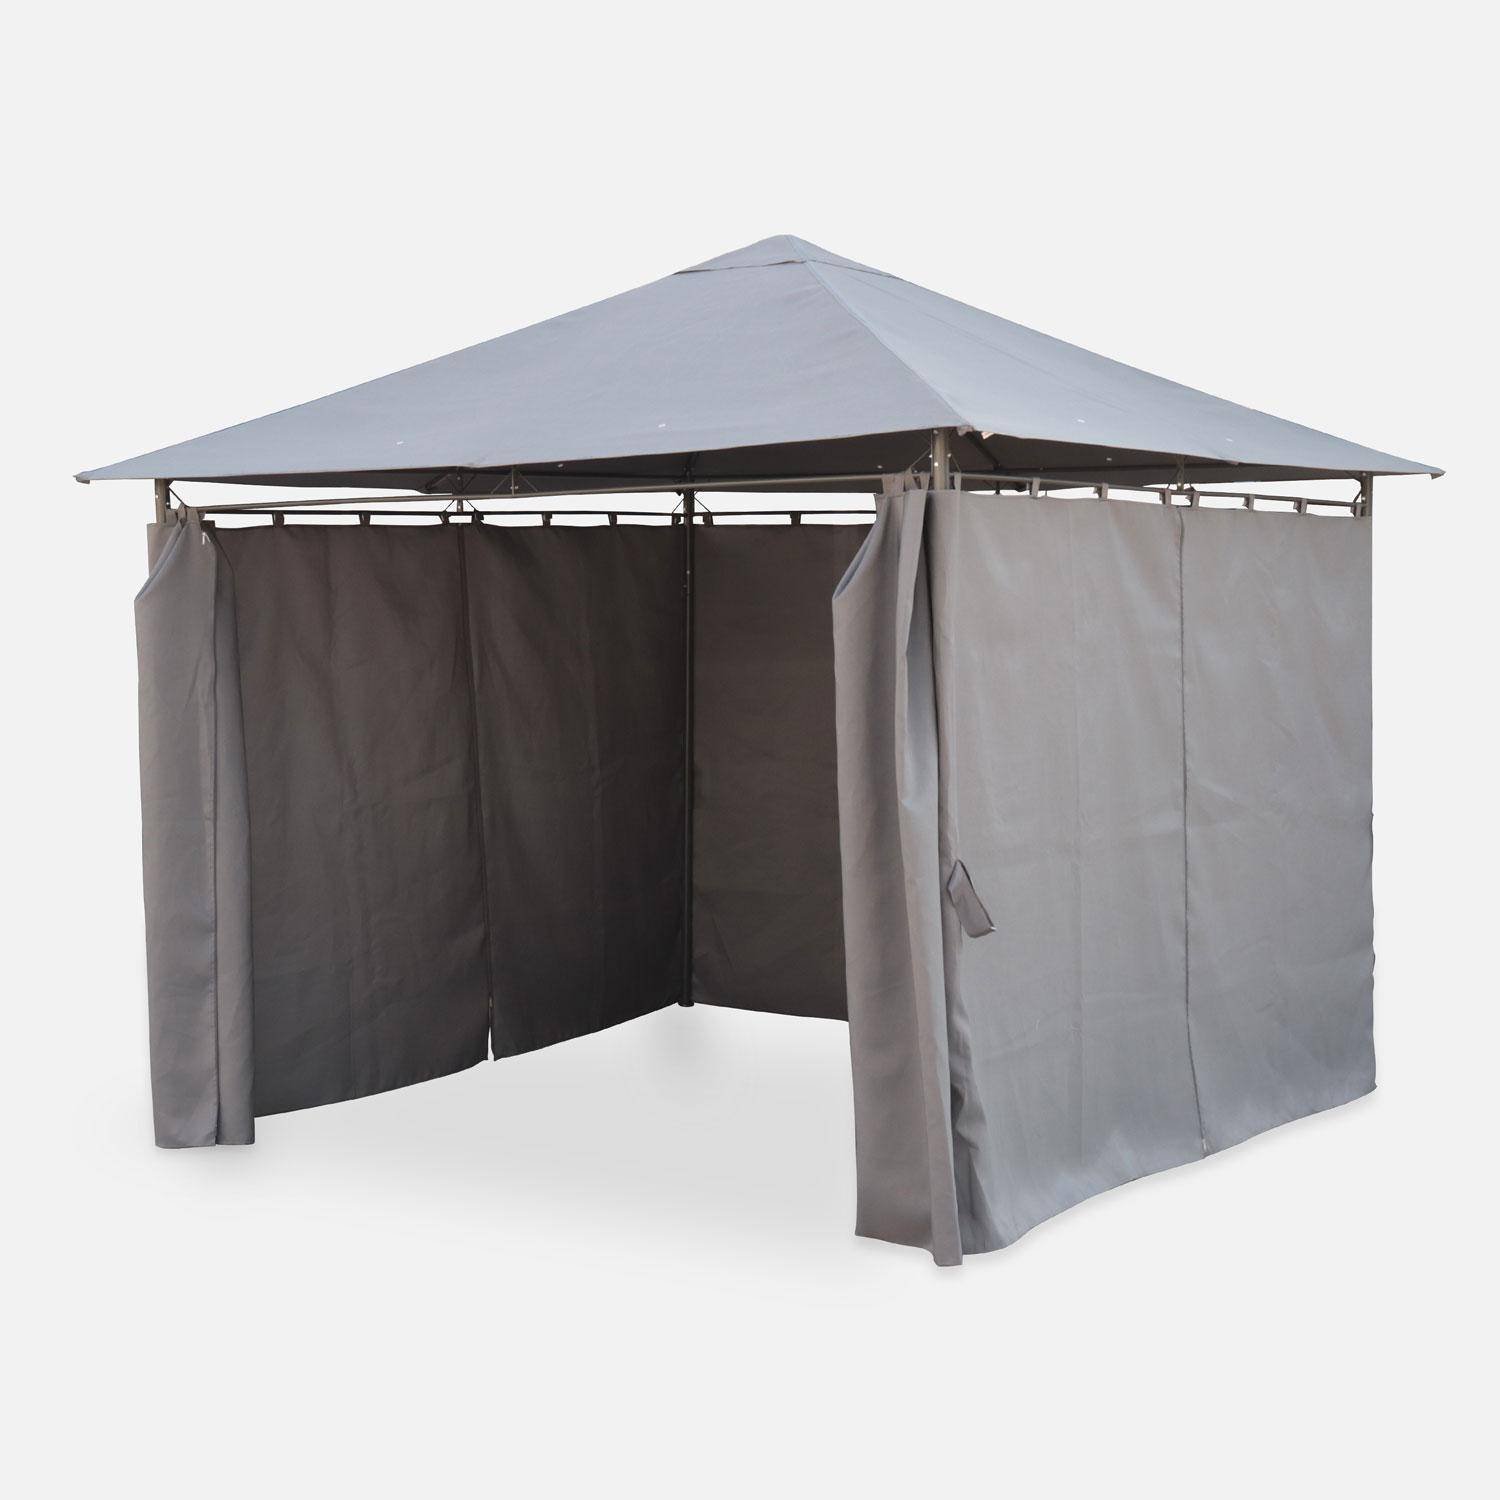 Pergola 3x3m - Elusa - Tela grigia - Pergola con tende, tenda da giardino, gazebo, ricevimenti Photo2